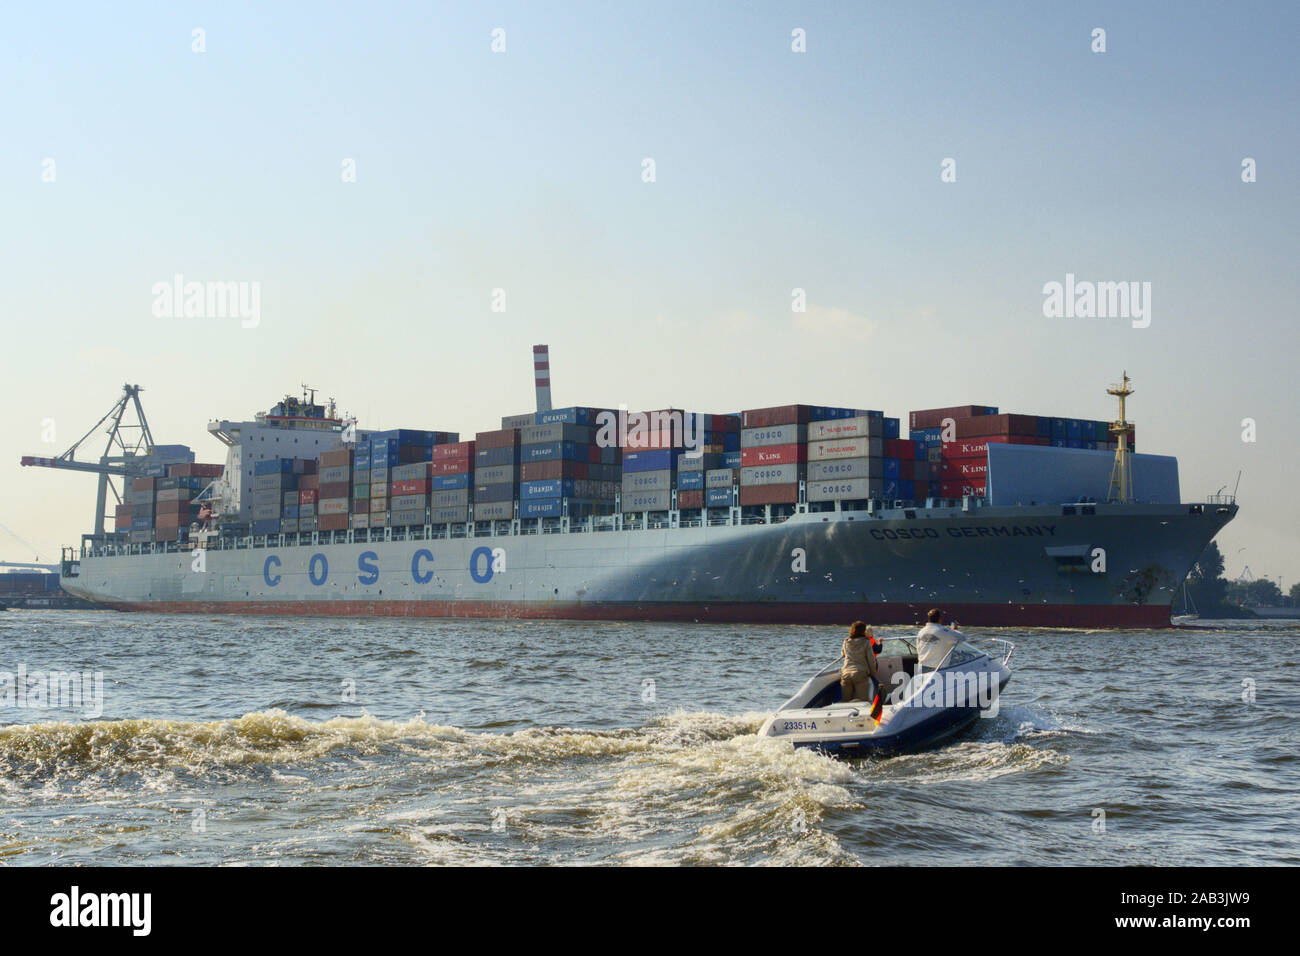 Containerschiff im Hamburger Hafen Foto Stock